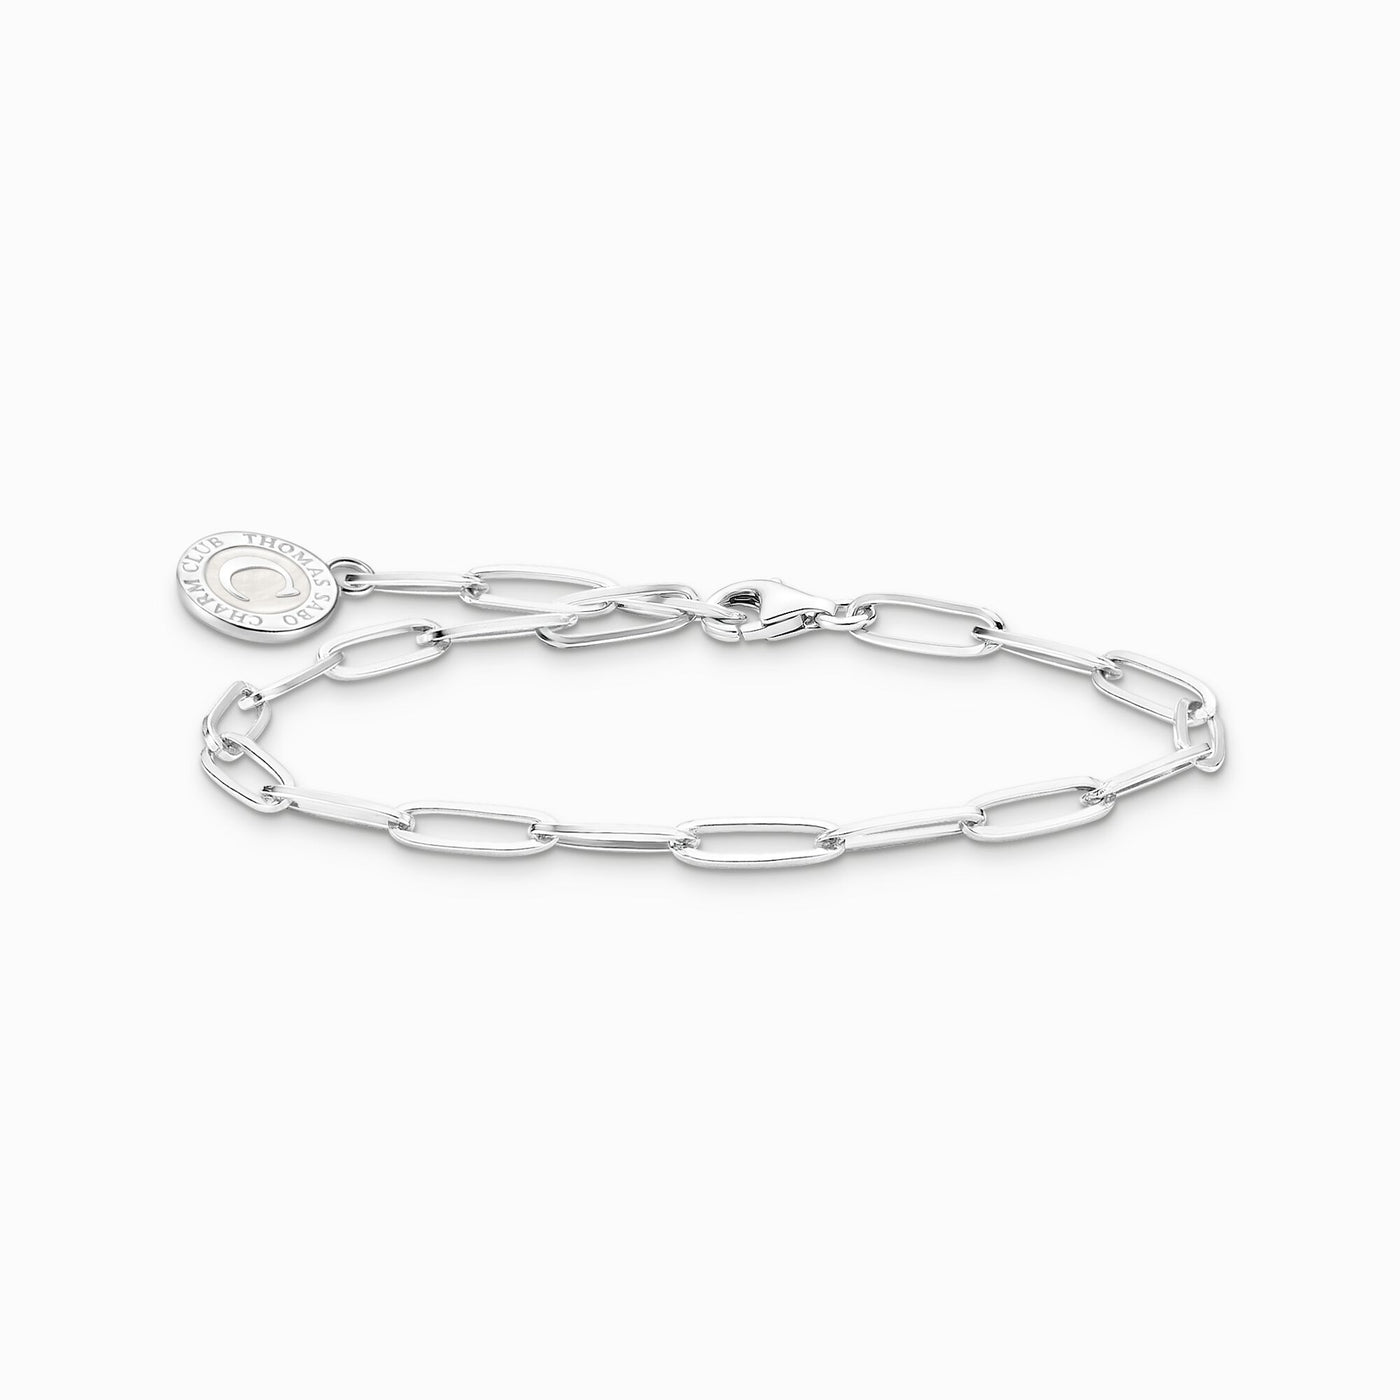 Charmista Silver Long link Necklace - 45cm